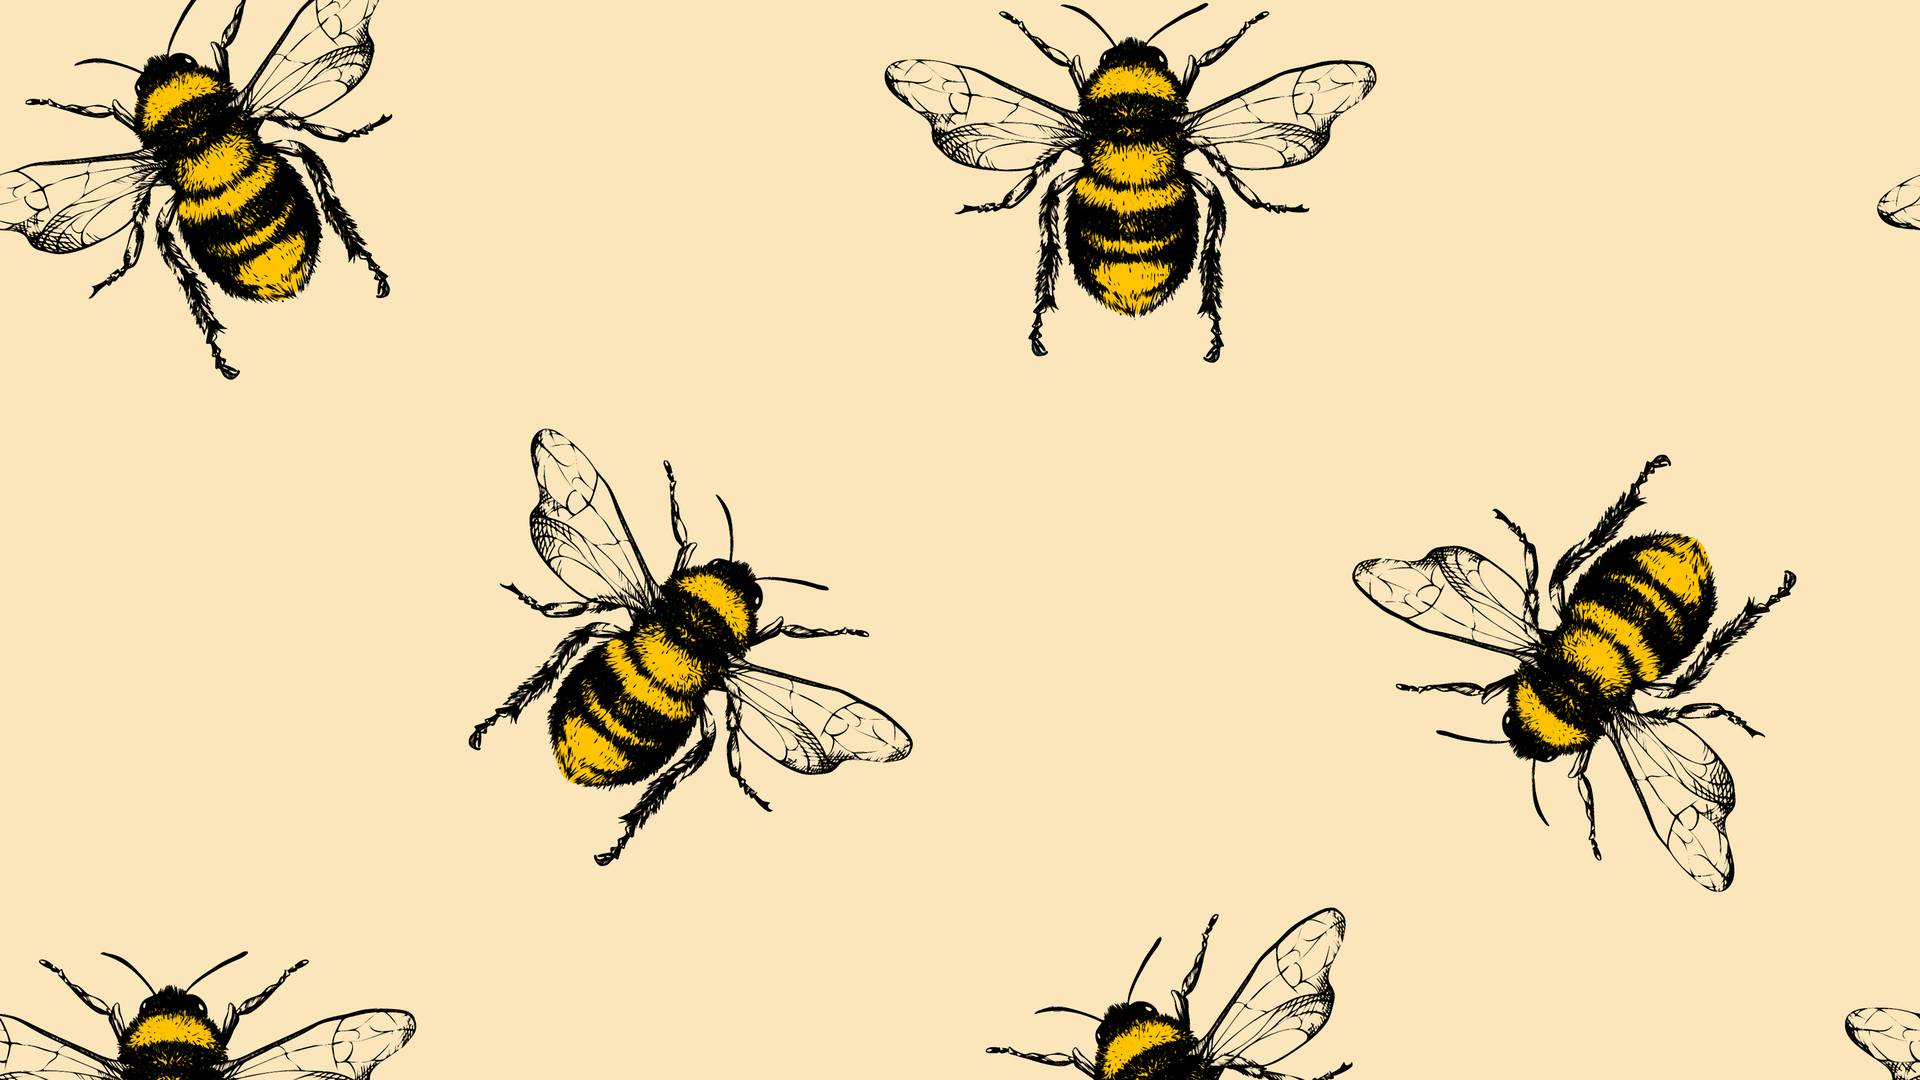 Jak dużo wiesz o pszczołach? Sprawdź się w quizie